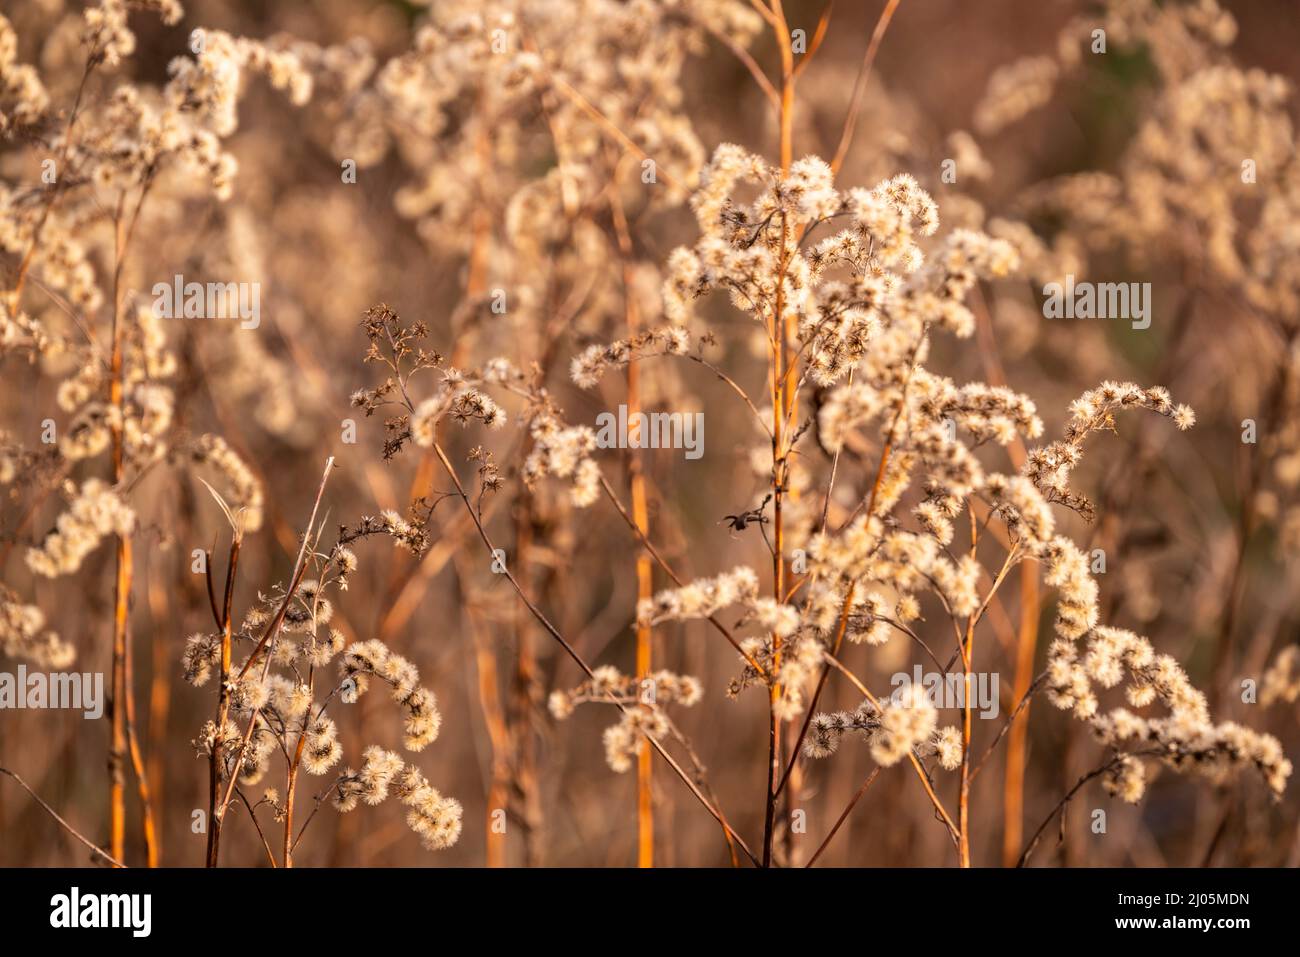 Foto de marco completo de plantas de bosques secos en invierno, formando una hermosa imagen de fondo natural en colores de otoño subtile marrón Foto de stock